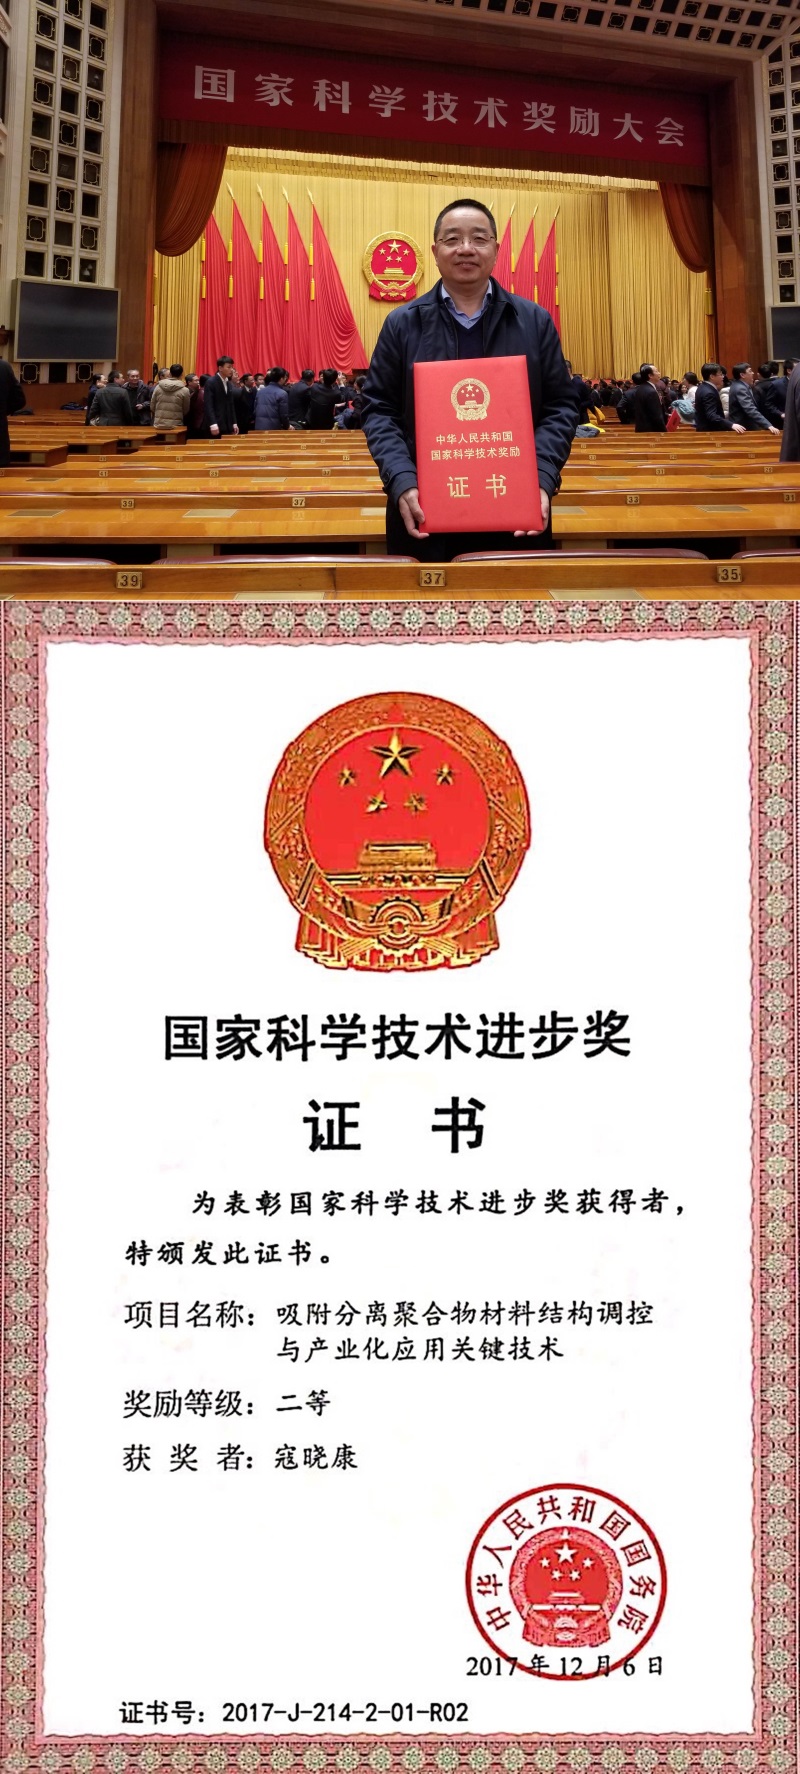 热烈祝贺寇晓康同志再获“国家科技进步二等奖”殊荣